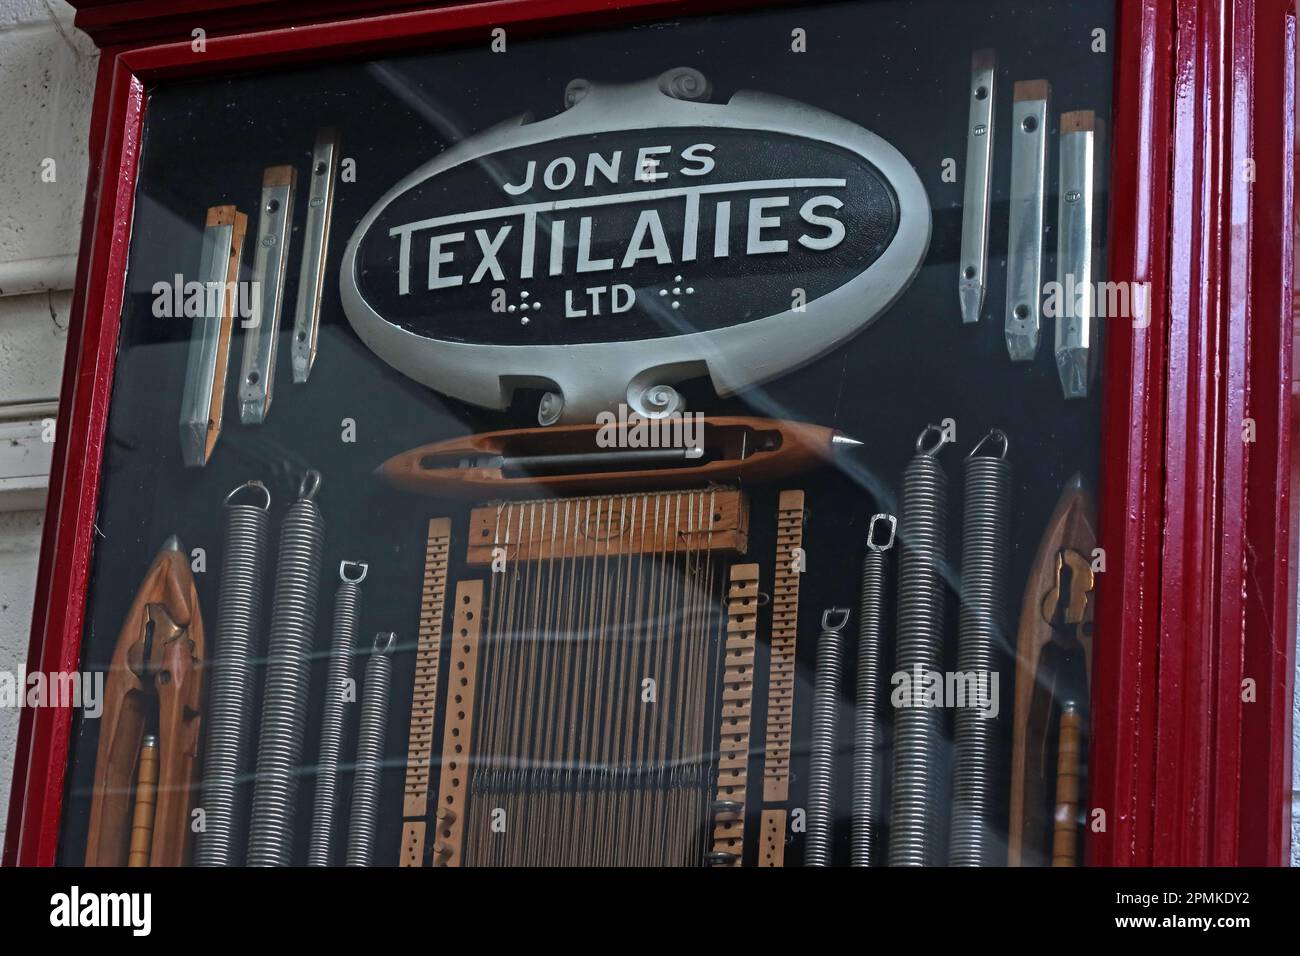 Jones Textilaties Ltd display - 1082 Burnley Road East, Water, Rossendale, Lancashire, England, UK, BB4 9PX Stock Photo